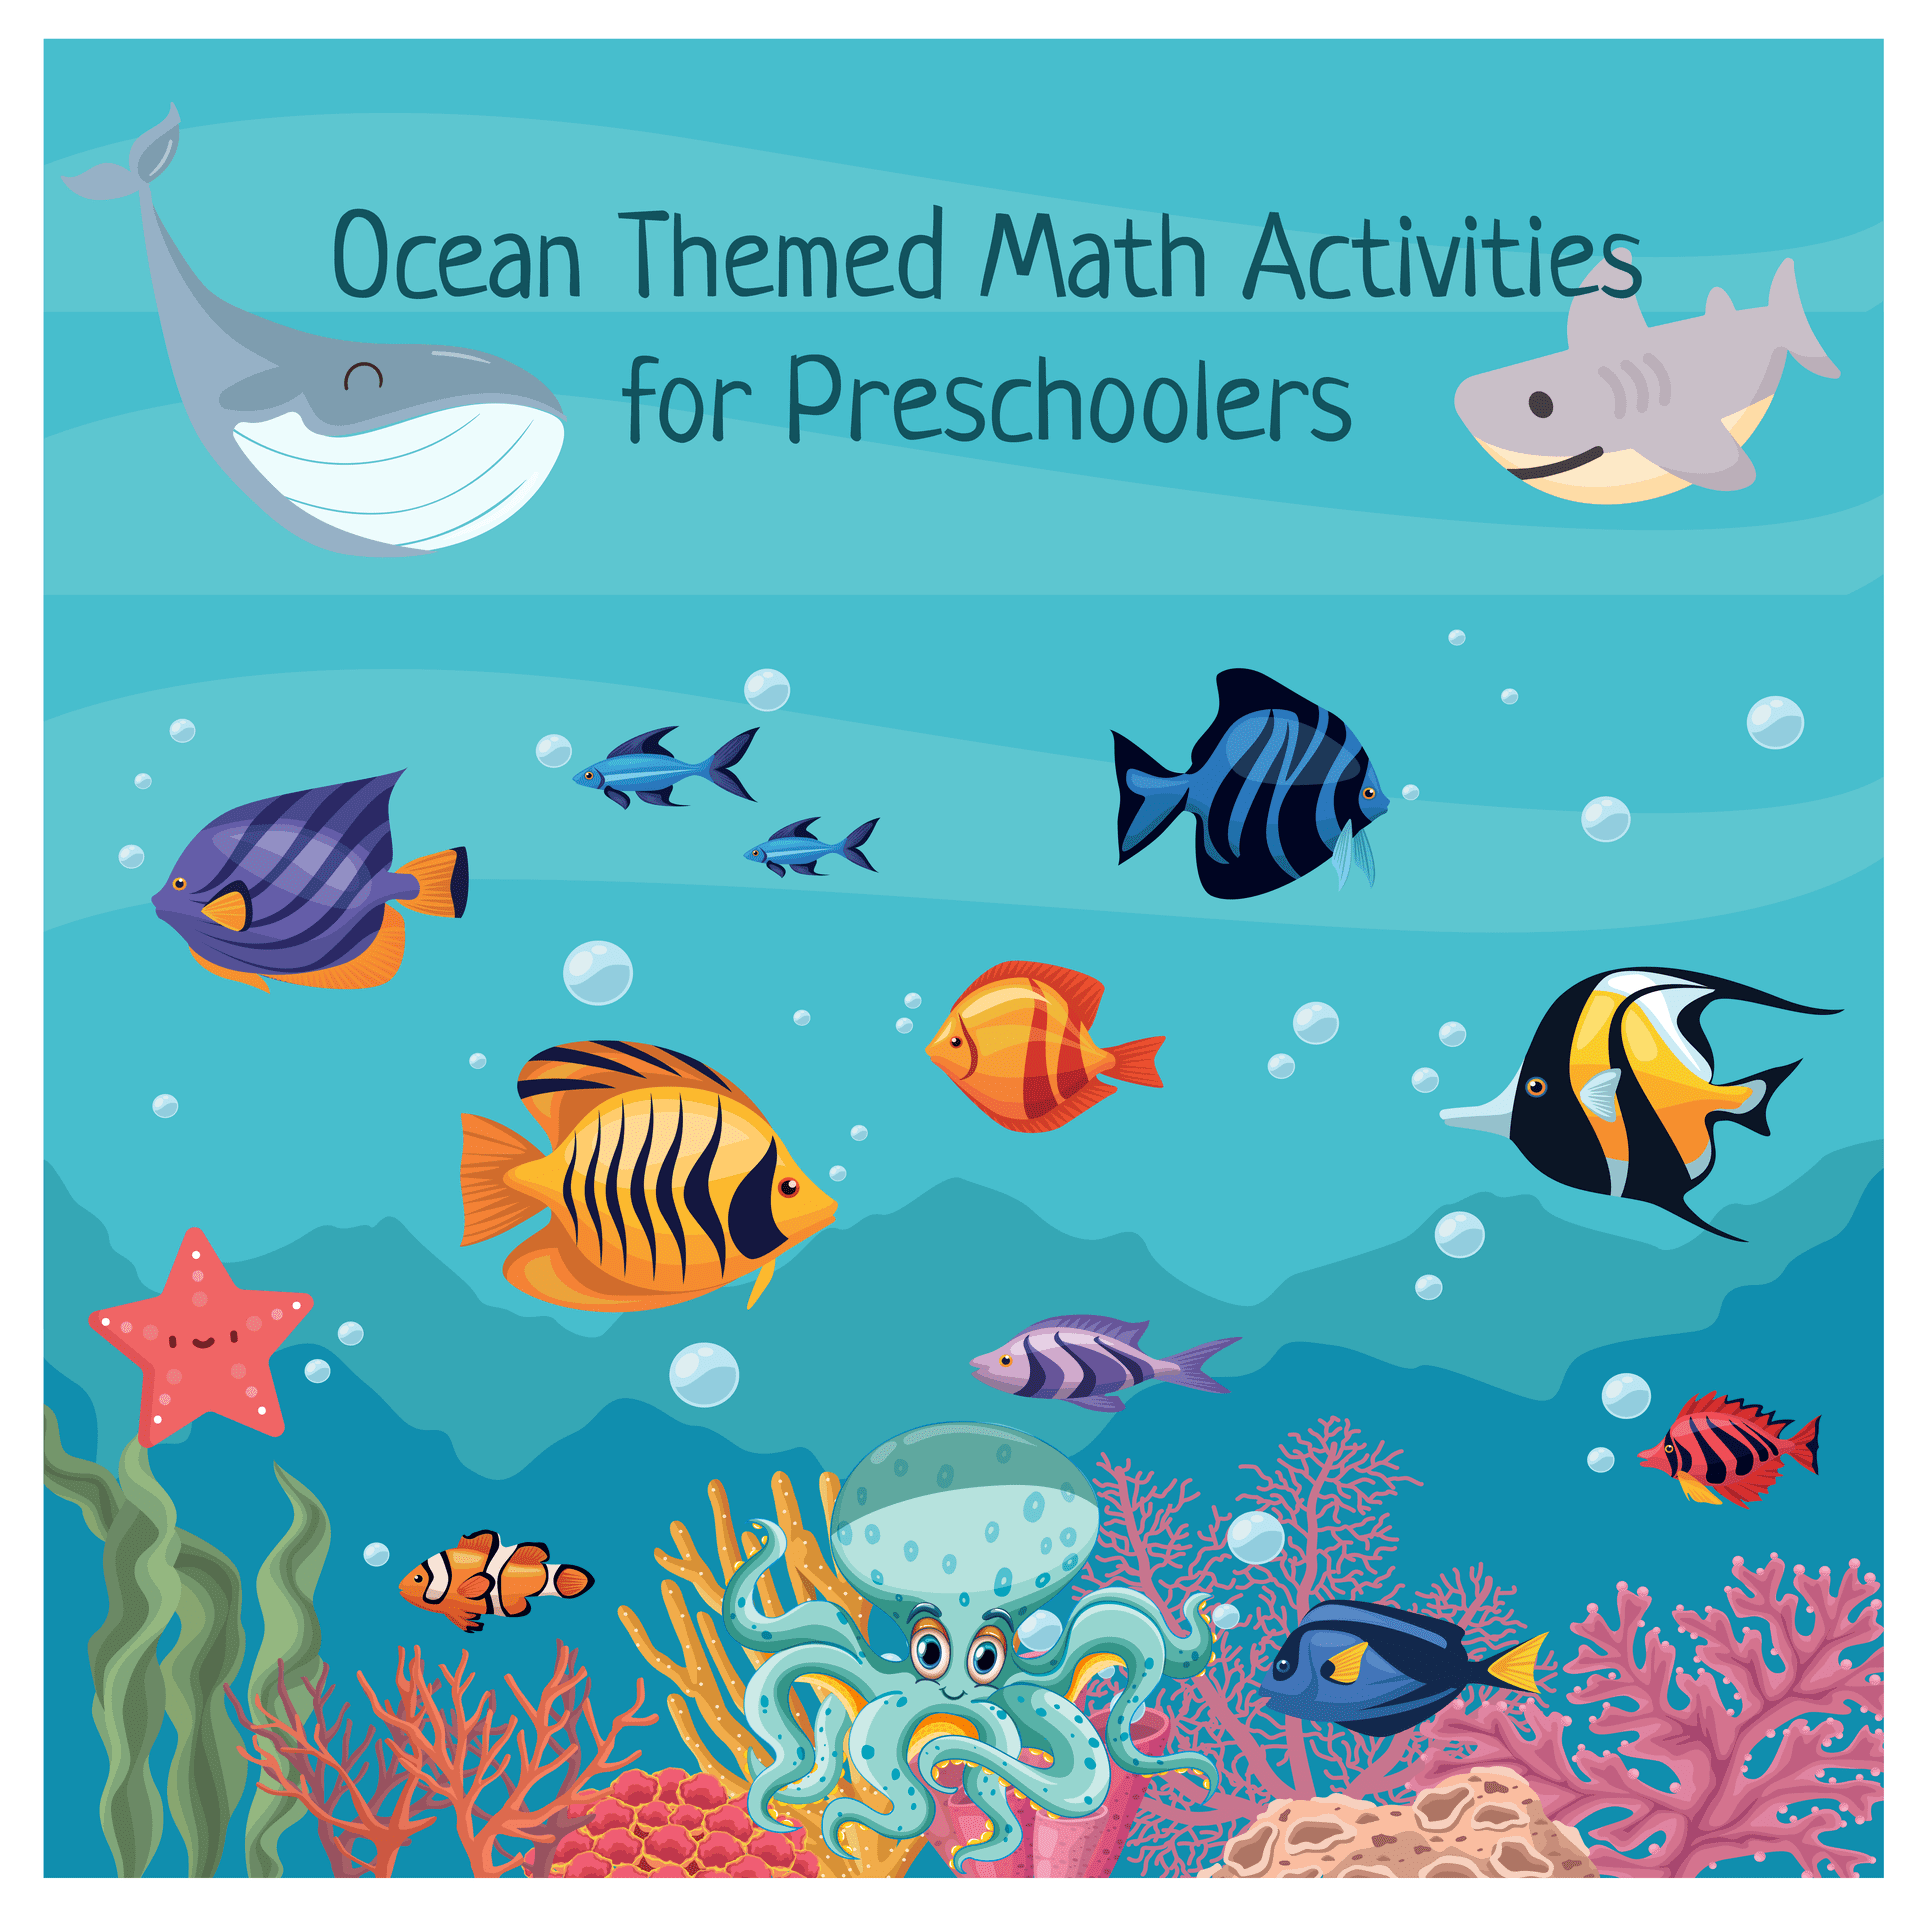 Ocean Themed Math Activities for Preschoolers